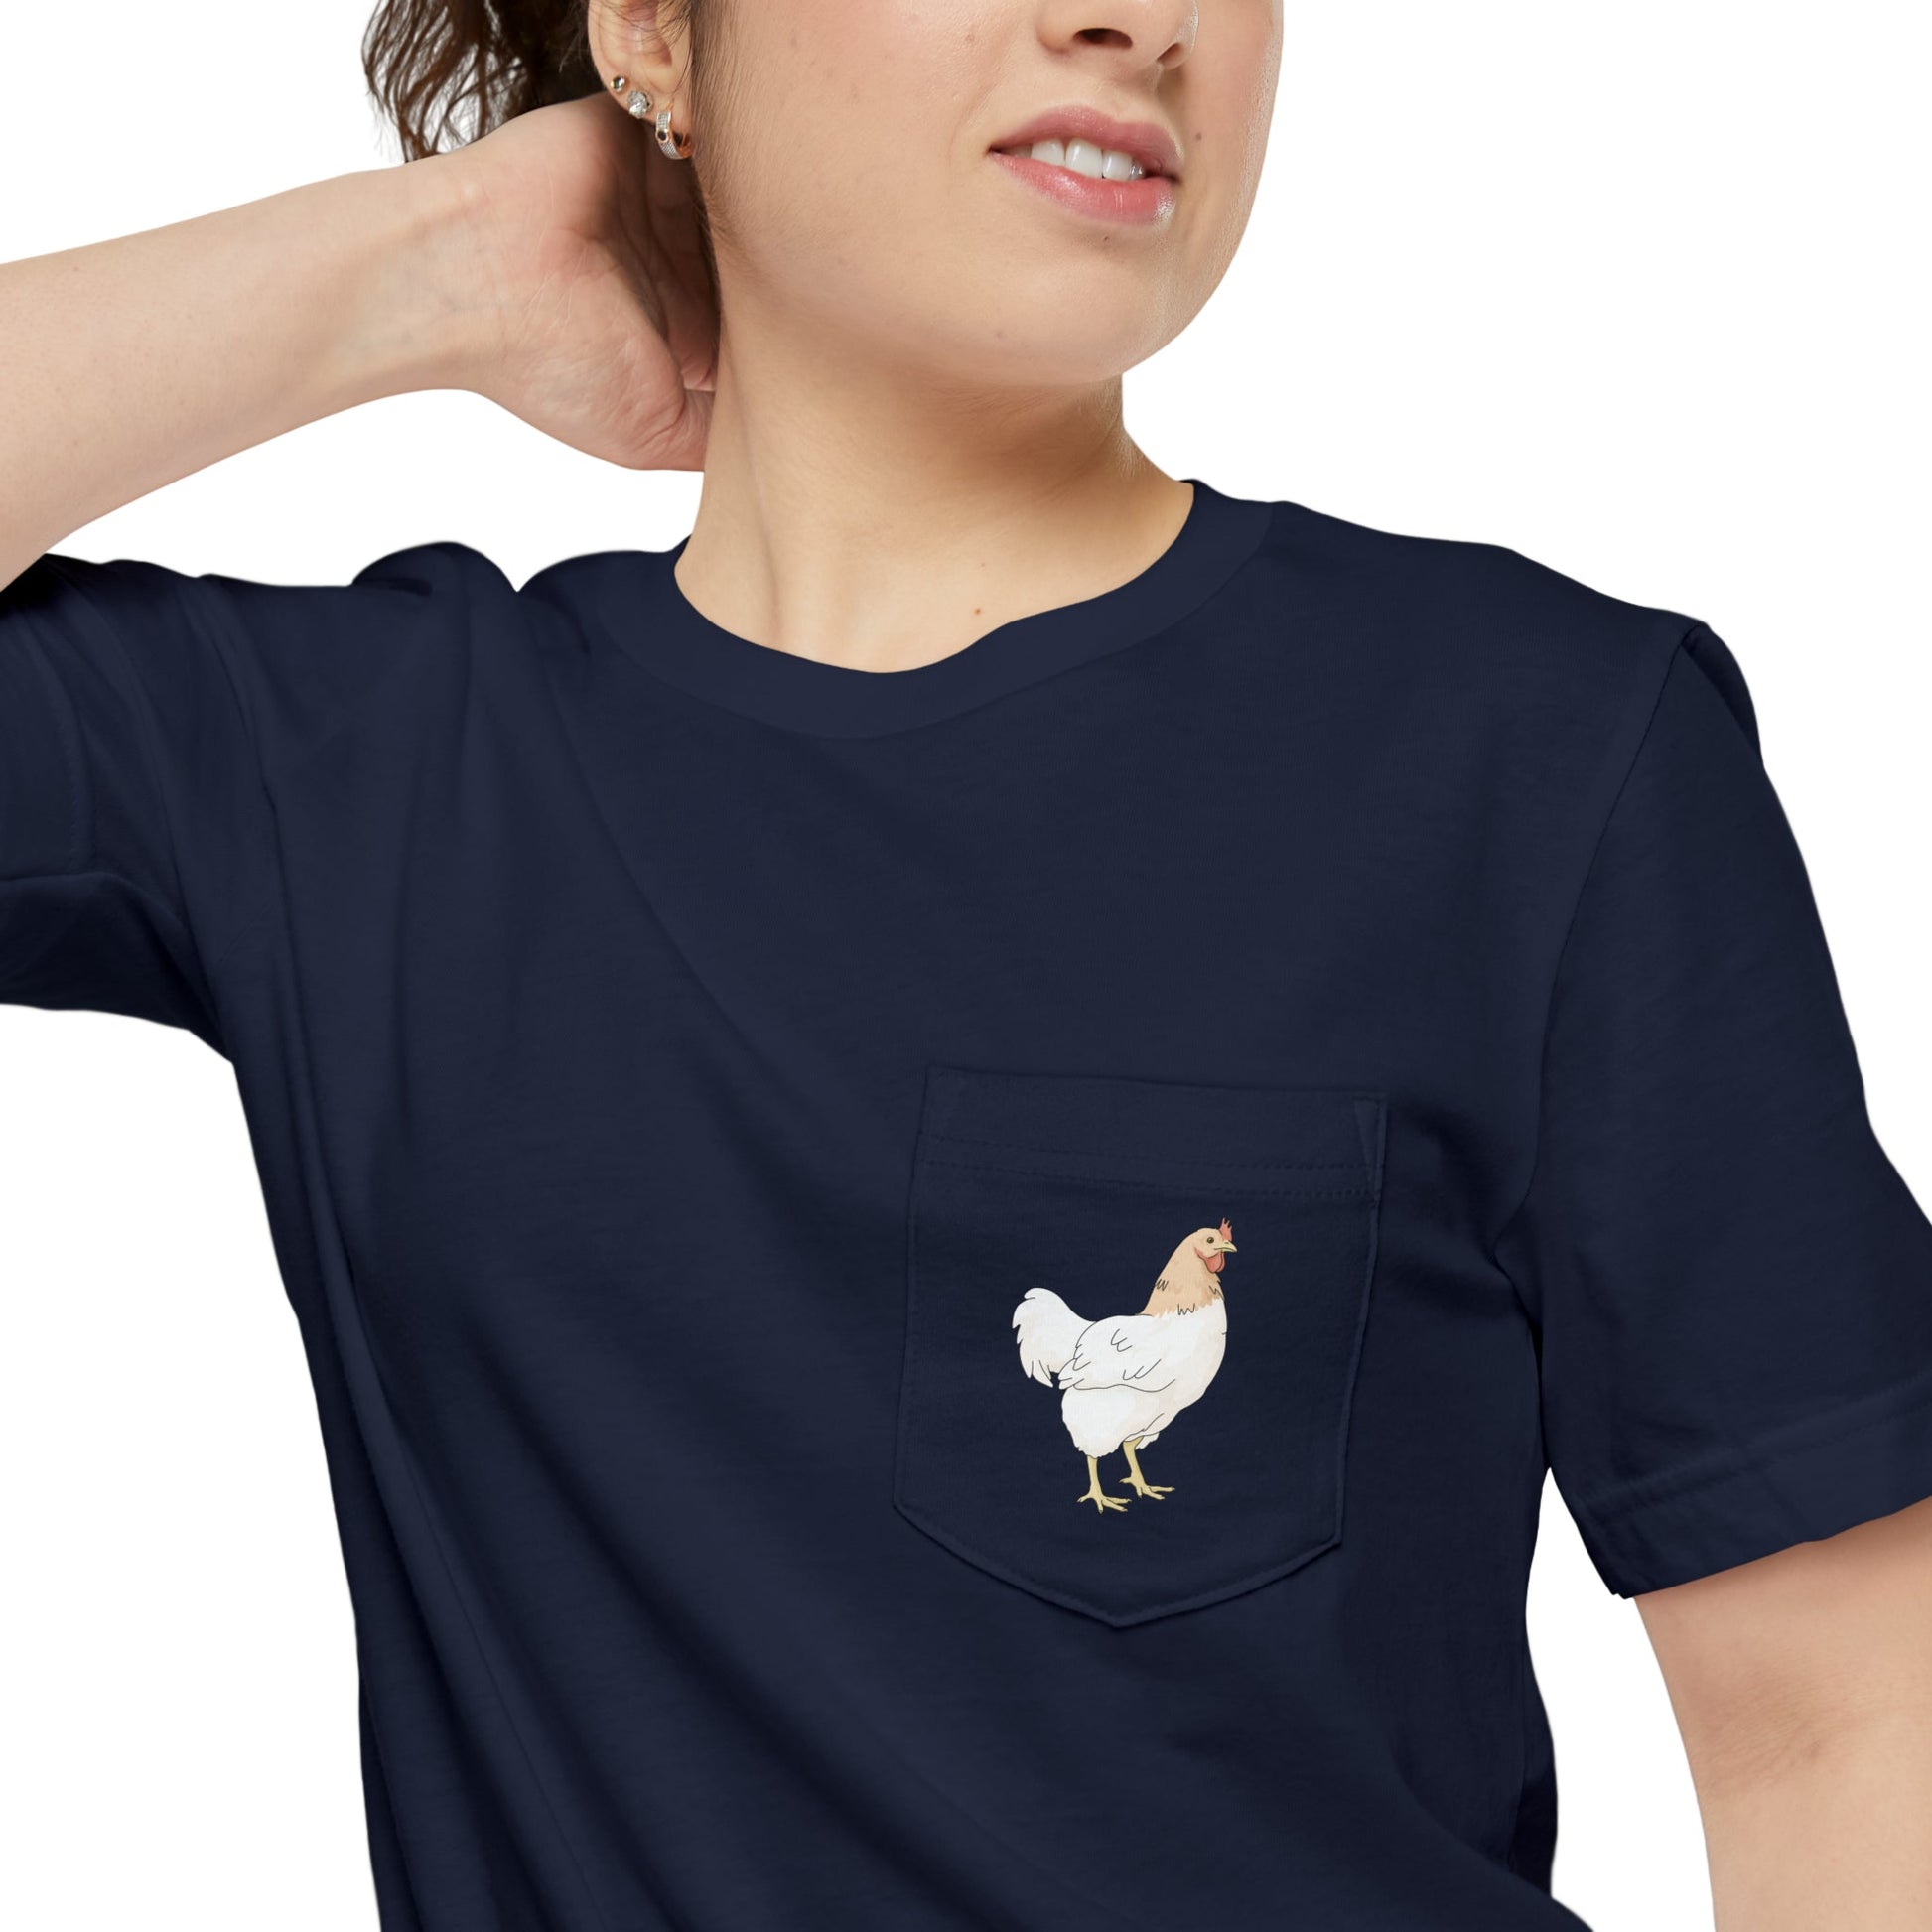 Chicken | Pocket T-shirt - Detezi Designs-14533020330630603930